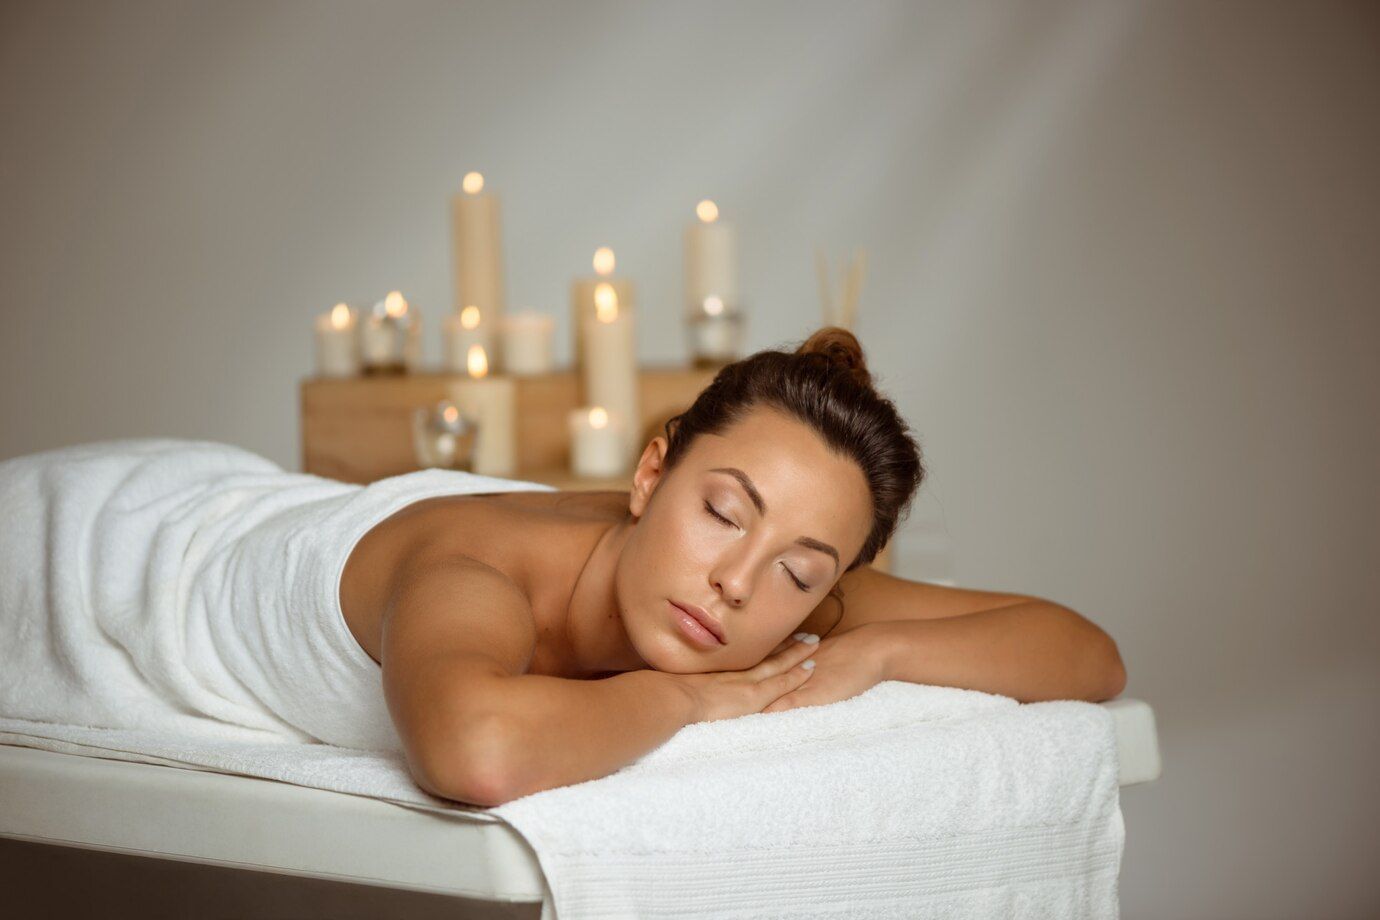 Mulher branca, com cabelo castanho recebendo uma massagem, deitada, com olhos fechados, relaxando, com toalhas envolvendo seu corpo.